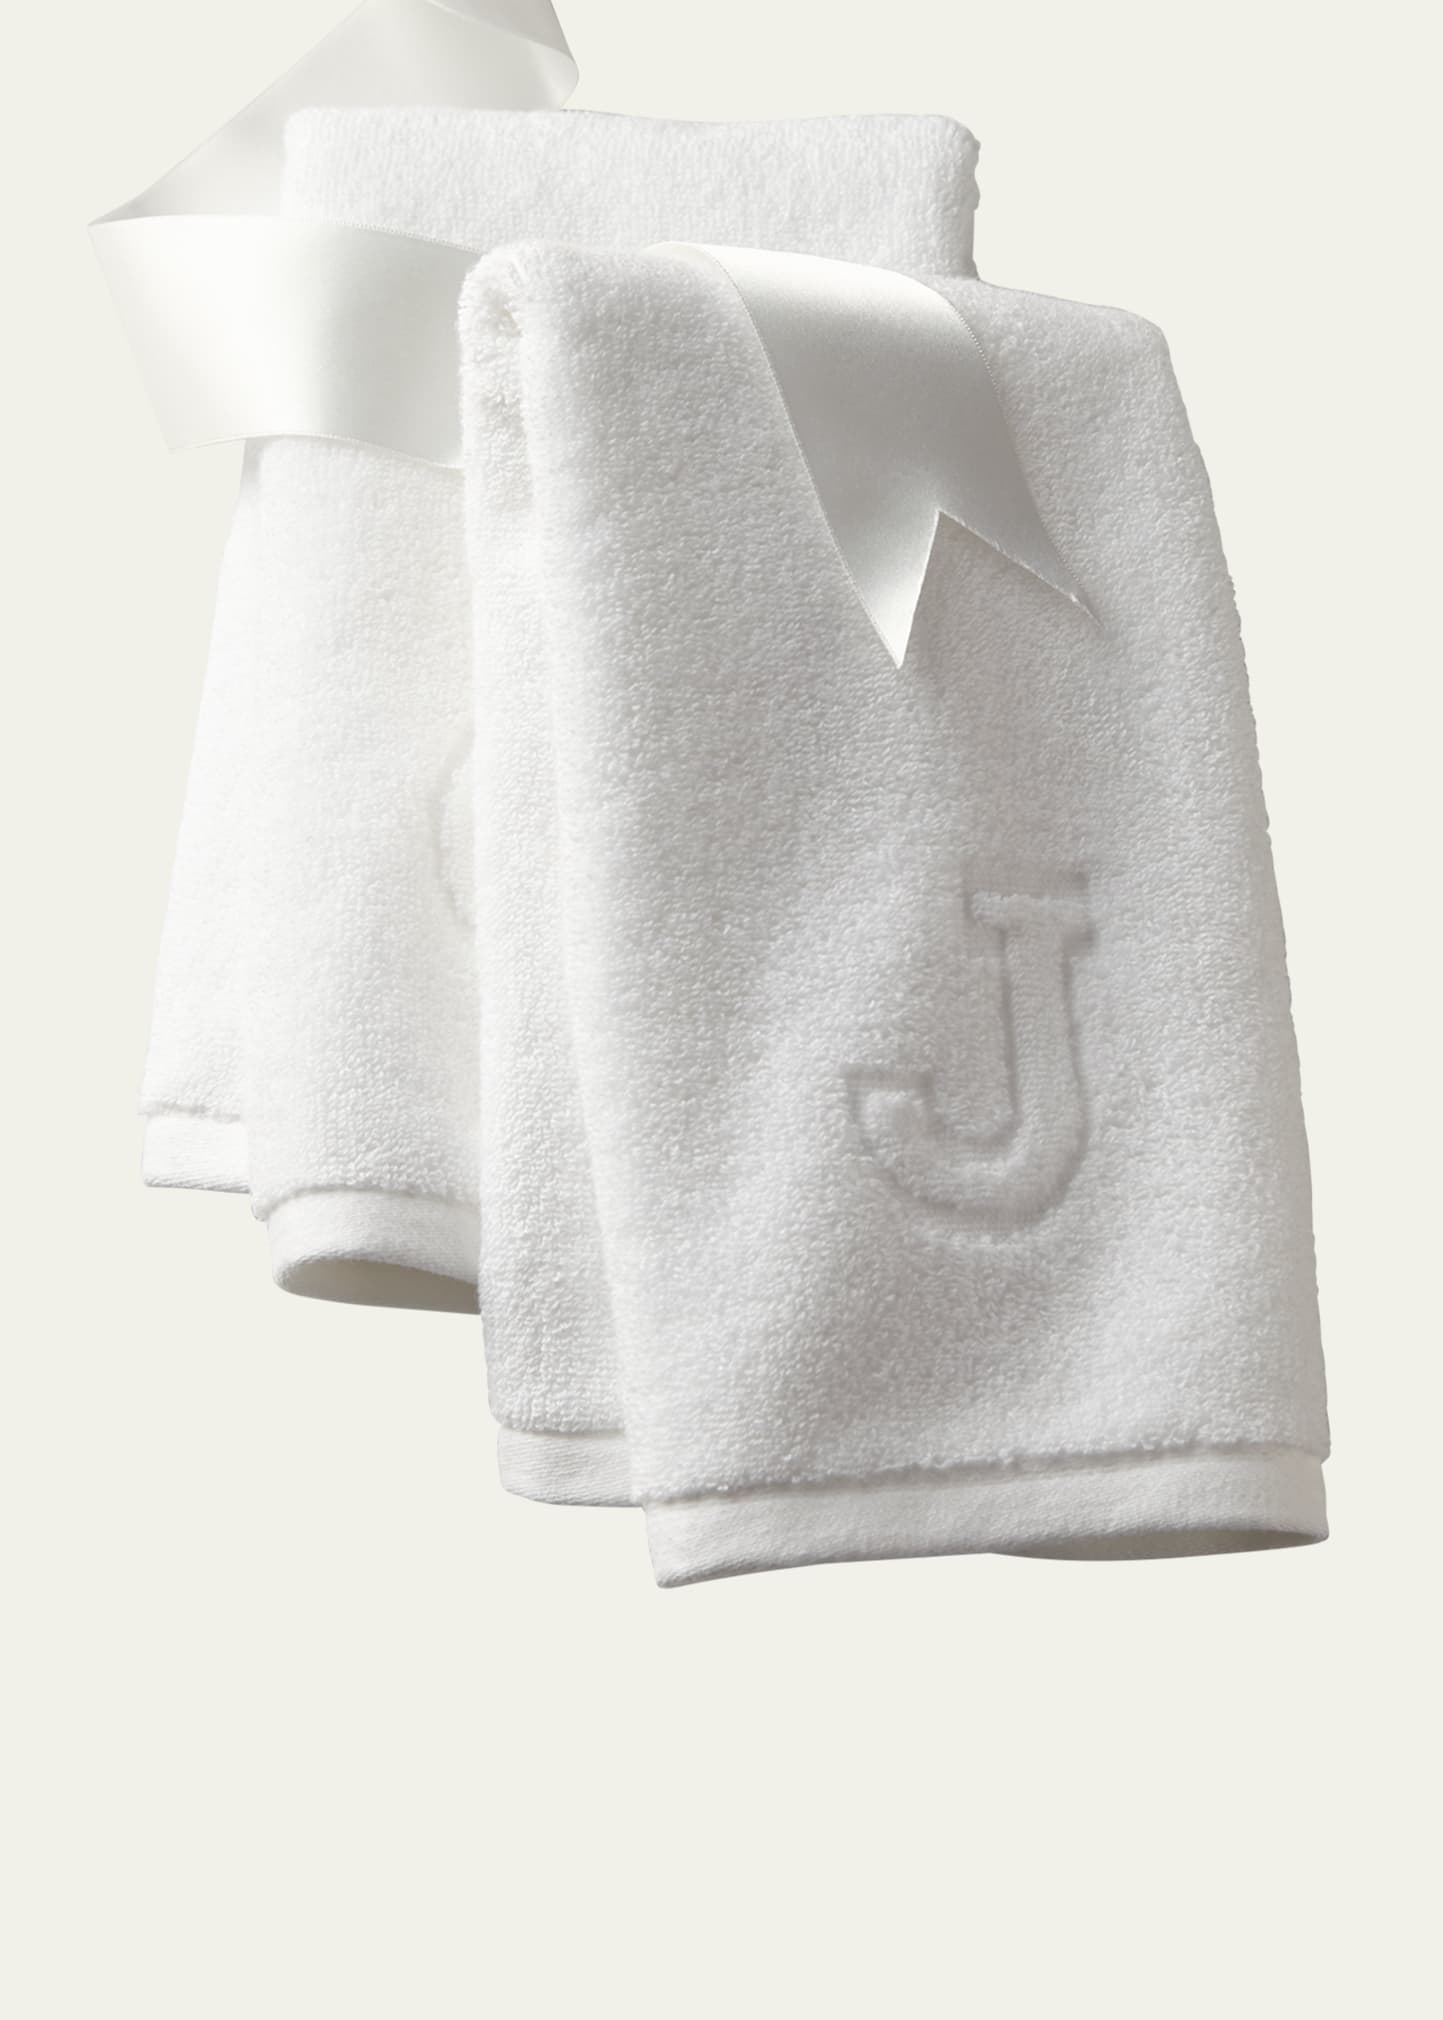 Auberge Monogrammed Bath Towel